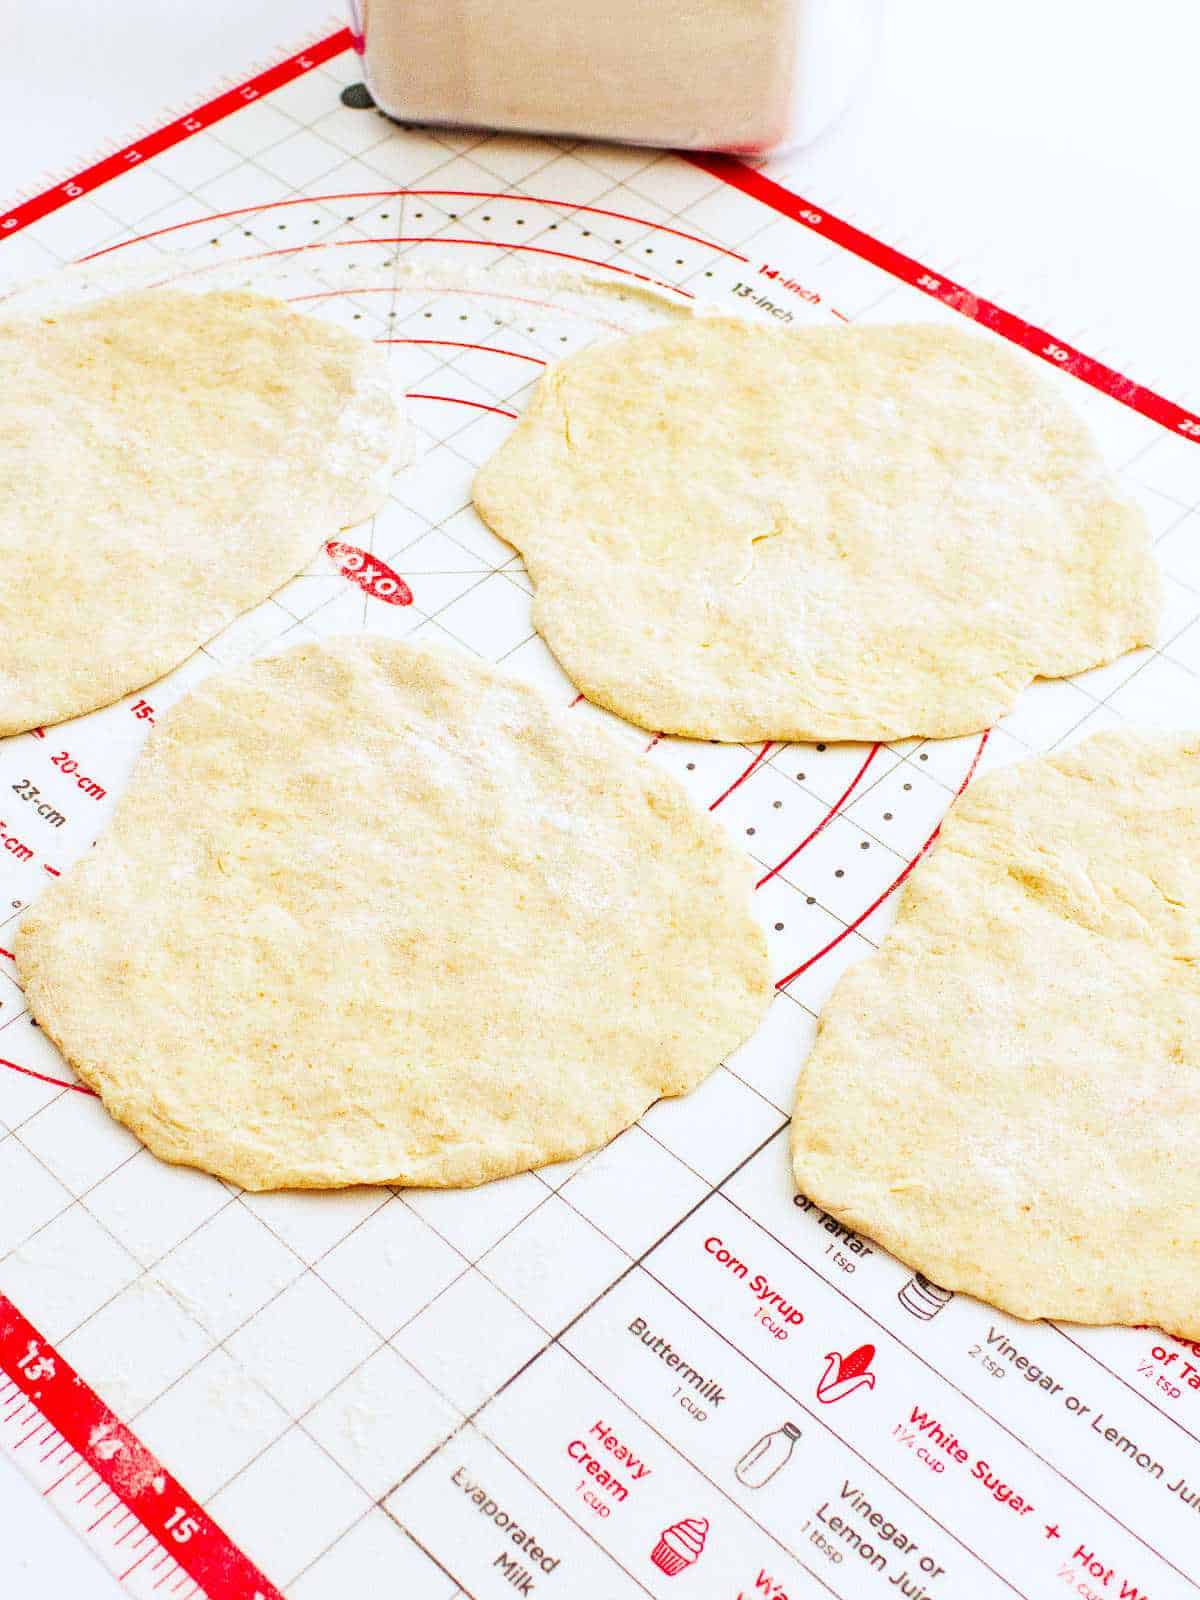 shaping dough into 10 flat discs.